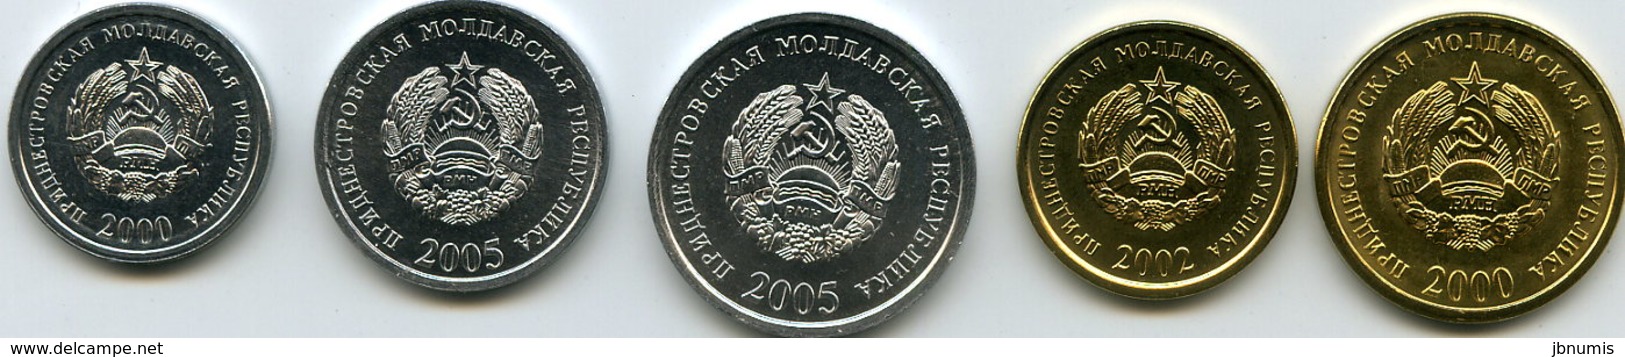 Moldavie Transdniestrie Transdnistria Série De 5 Pièces 1 à 50 Kopeek 2000 - 2005 Unc - Moldawien (Moldau)